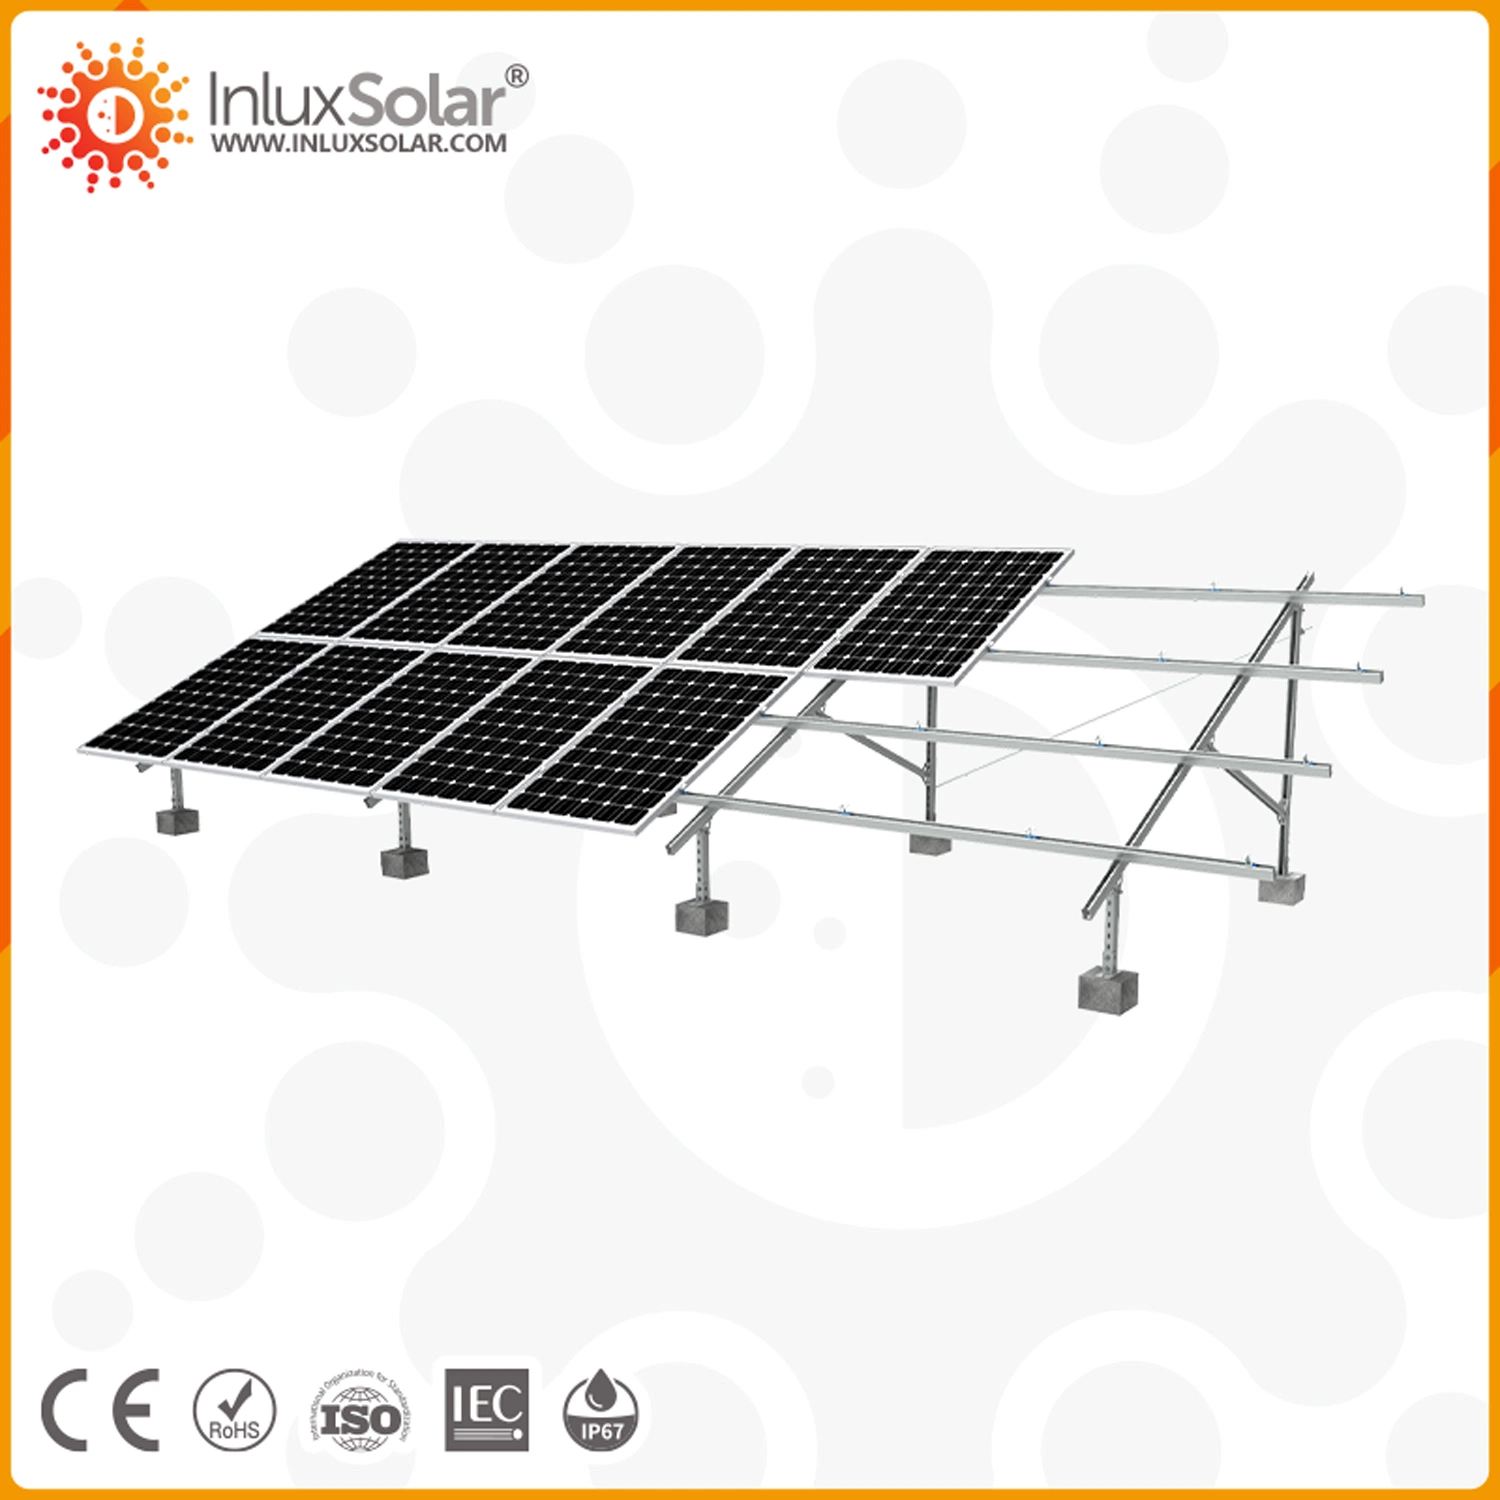 5 квт 10 квт 15 квт 20 кВт 30 квт гибридный вкл./выкл. Grid Solar PV Панели инвертора фотоэлектрические системы для хранения энергии Система модуля генератора энергии Комплект с литий-ионным аккумулятором